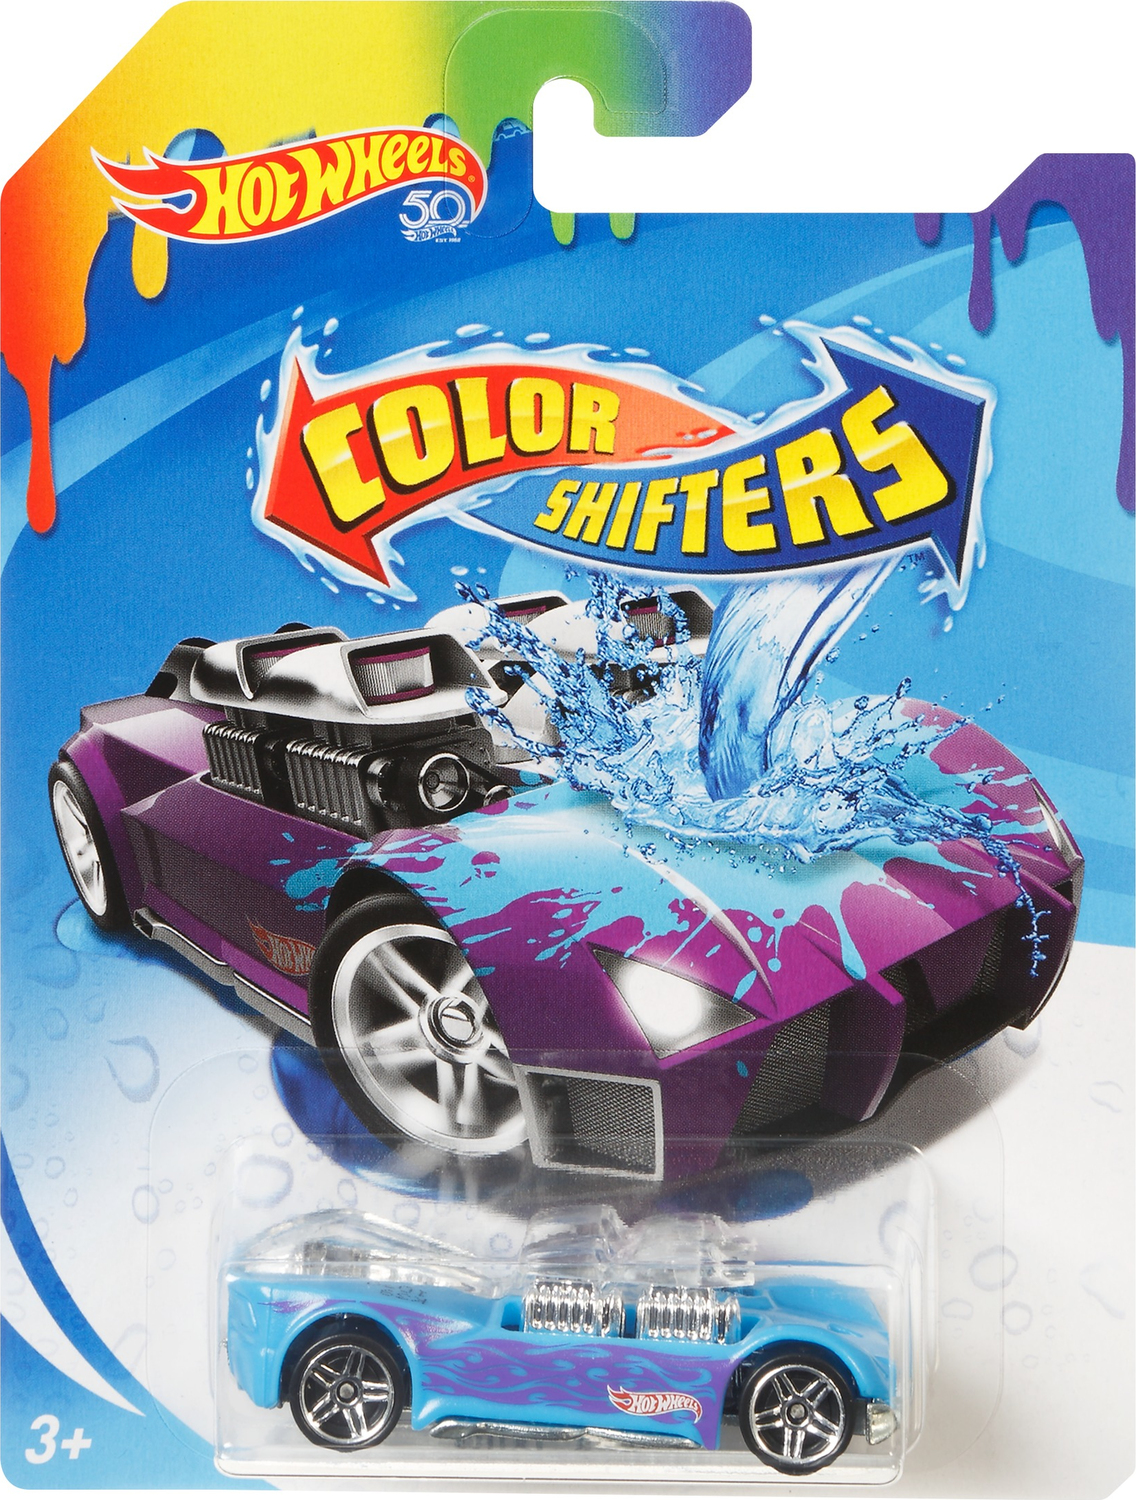 Hot Wheels Shifters, Veicoli Cambia-Colore, Assortimento di Macchinine,  Multicolore, Colori e Modelli Assortiti